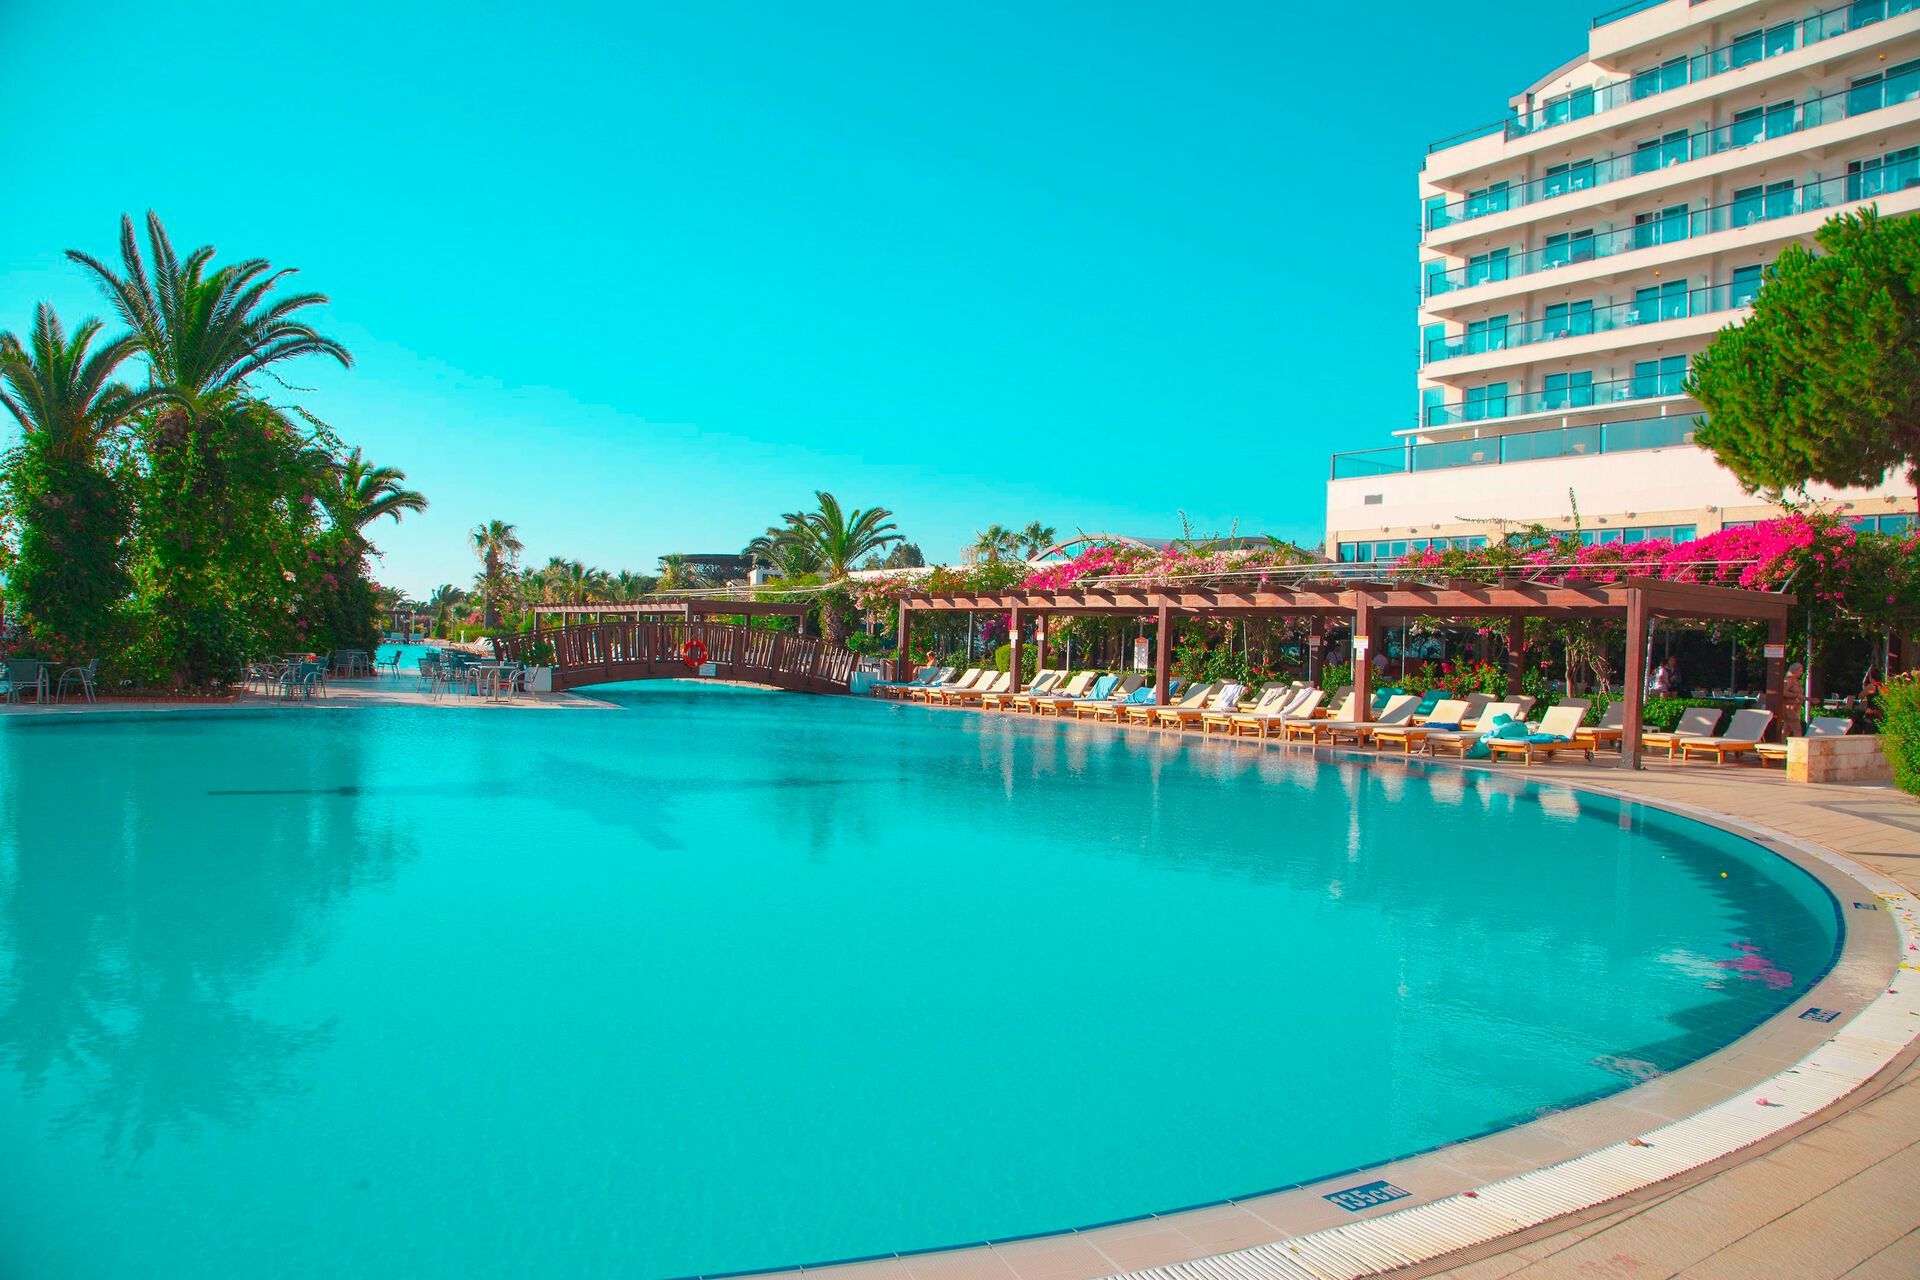 Turquie - Izmir - Hôtel Venosa Beach Resort & Spa 5*